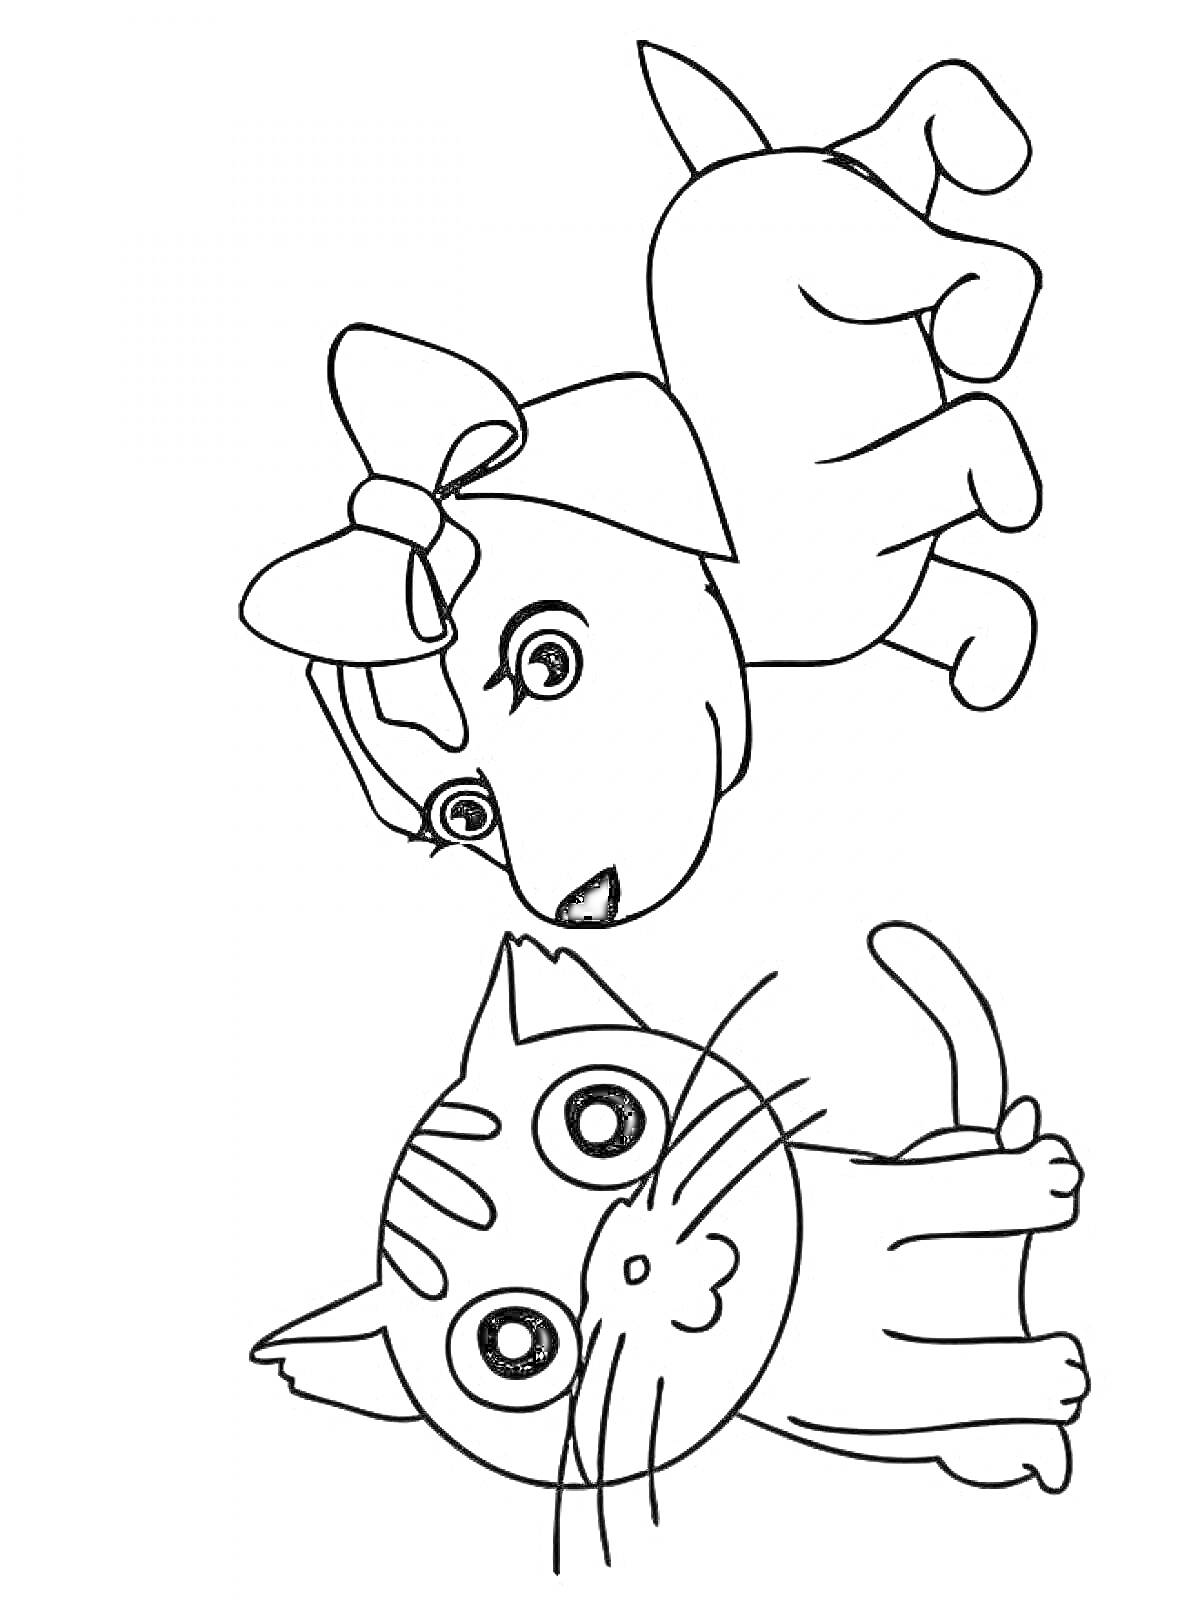 Раскраска Кошка с большими глазами и собака с бантом